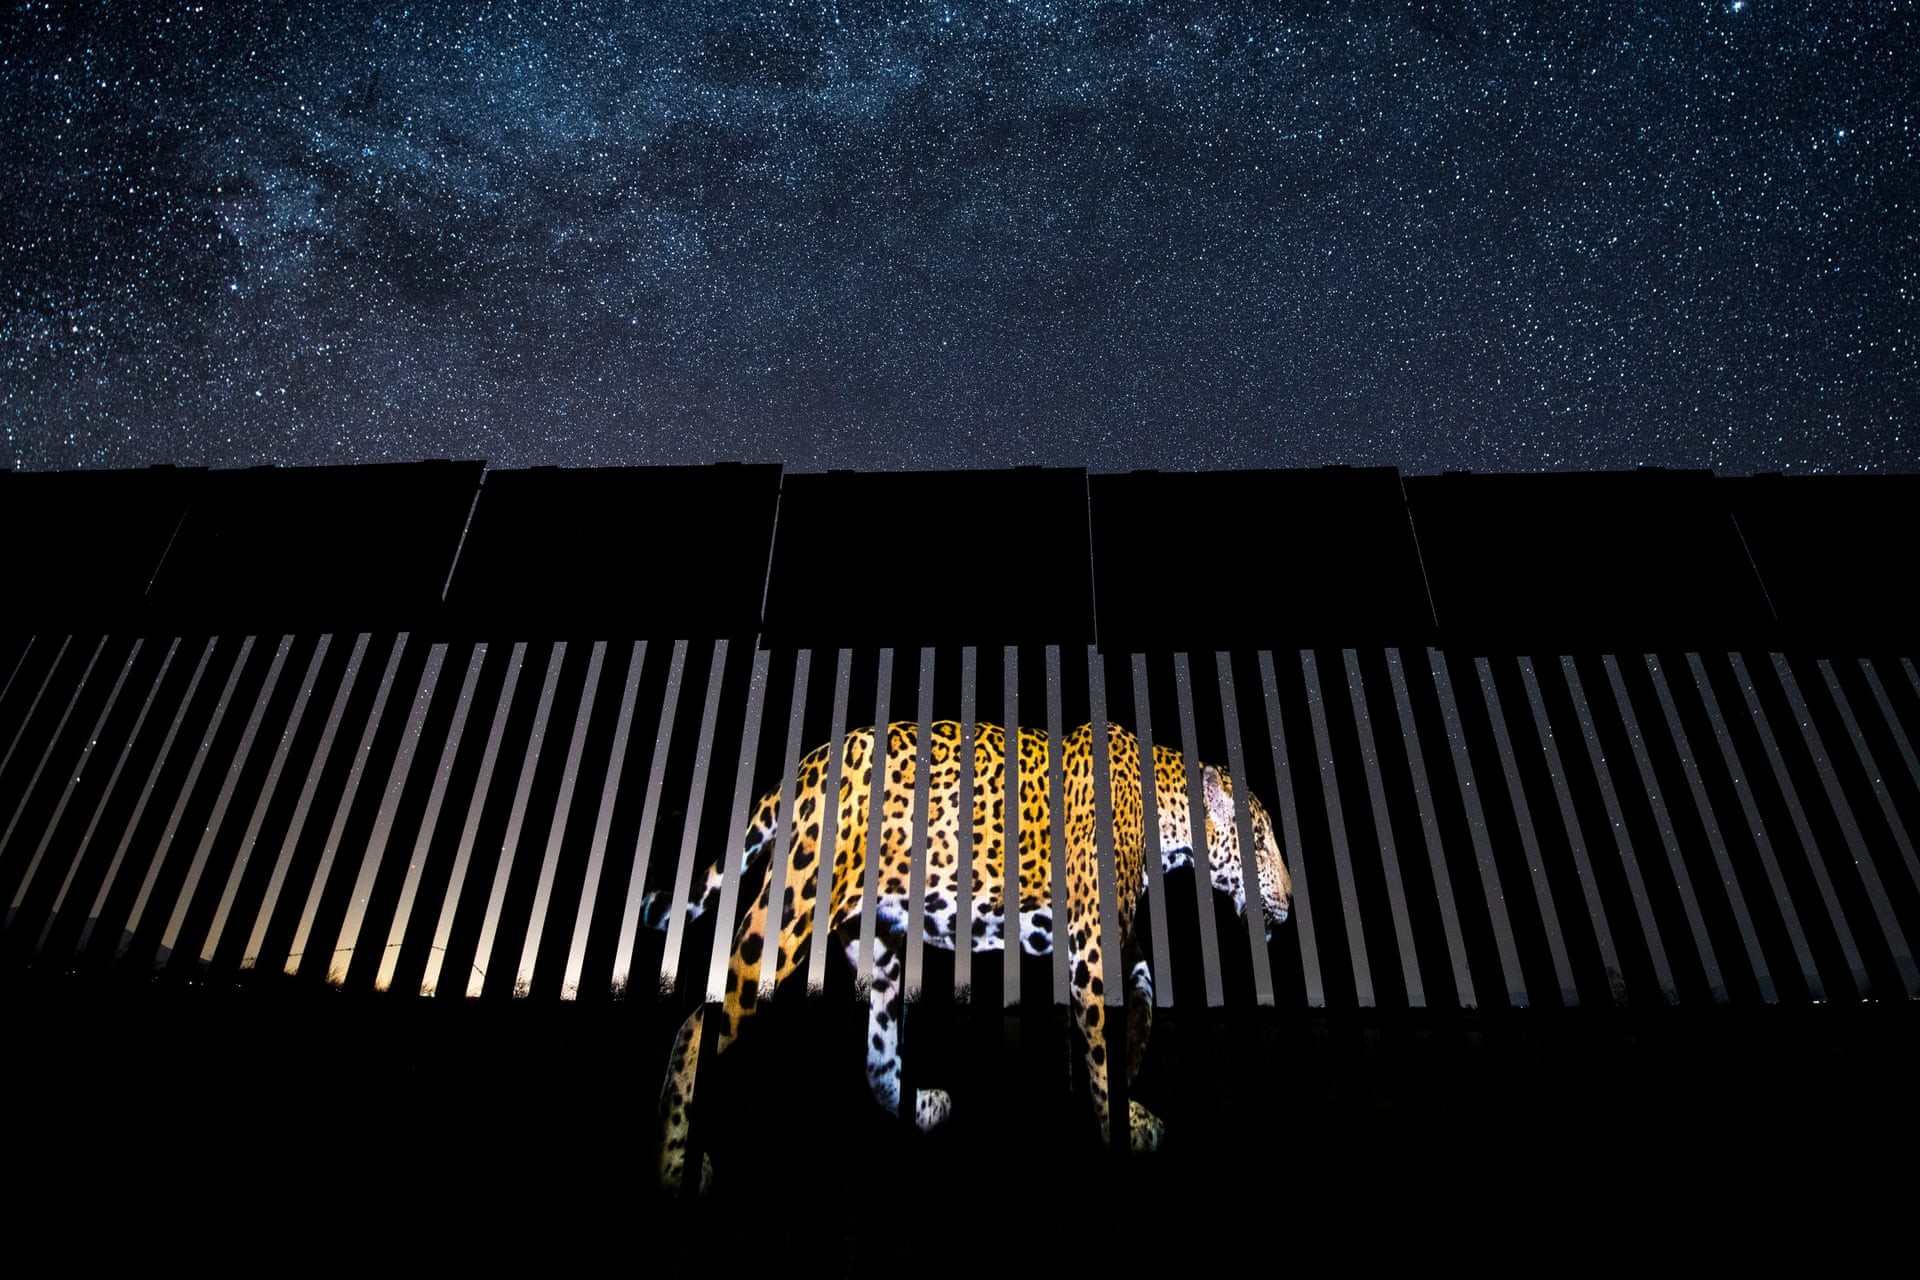 Запрещённый мигрант. Изображение ягуара проецируется на границе США и Мексики. Победитель в категории Дикая природа в жанре фотожурналистики. Автор Алехандро Прието